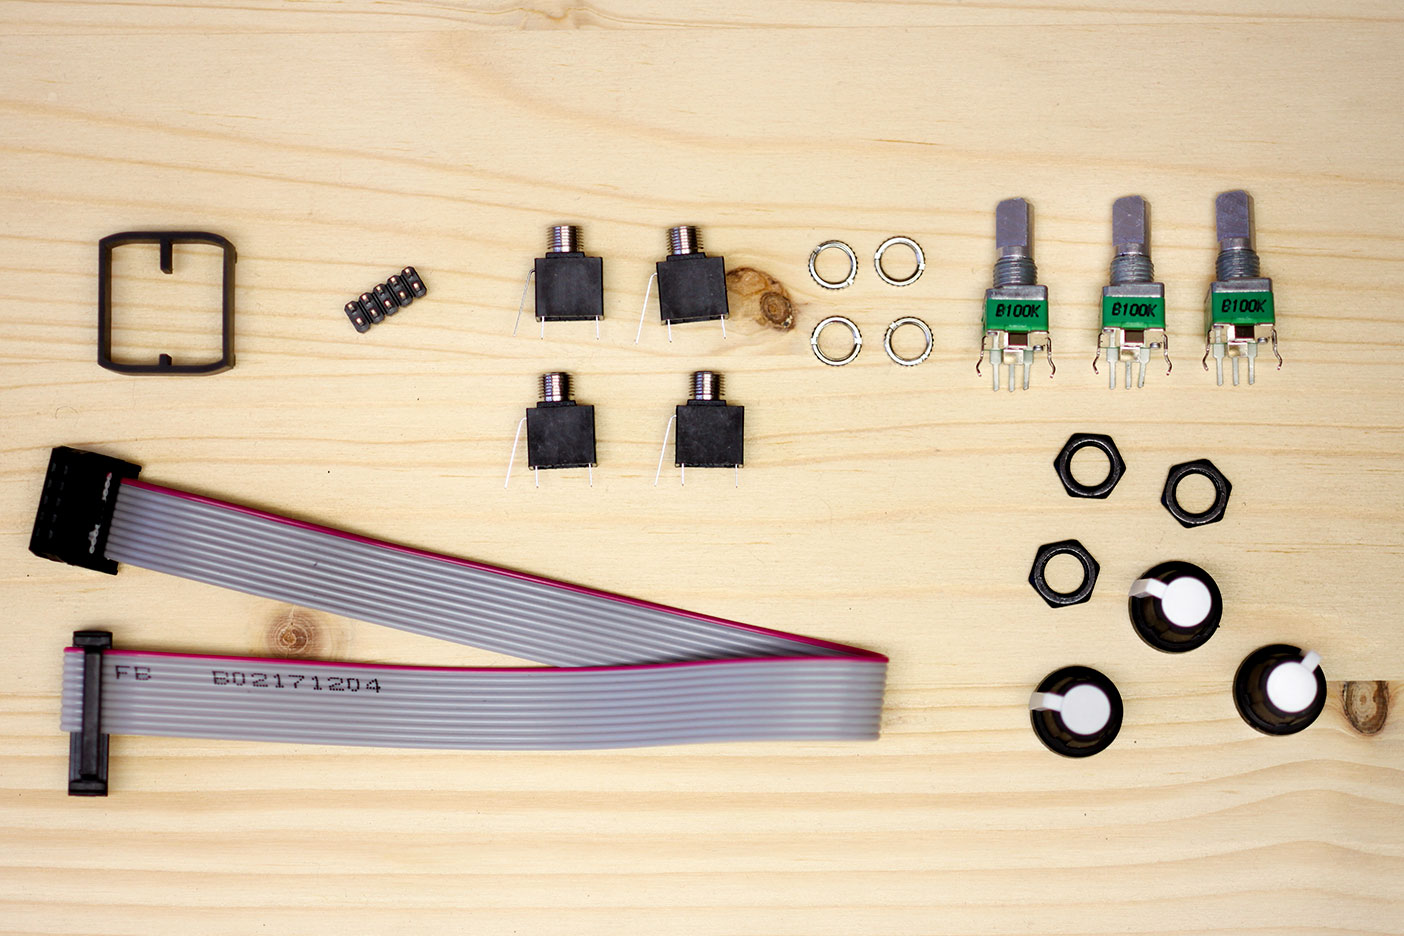 Farbshaper DIY Kit – Build Guide